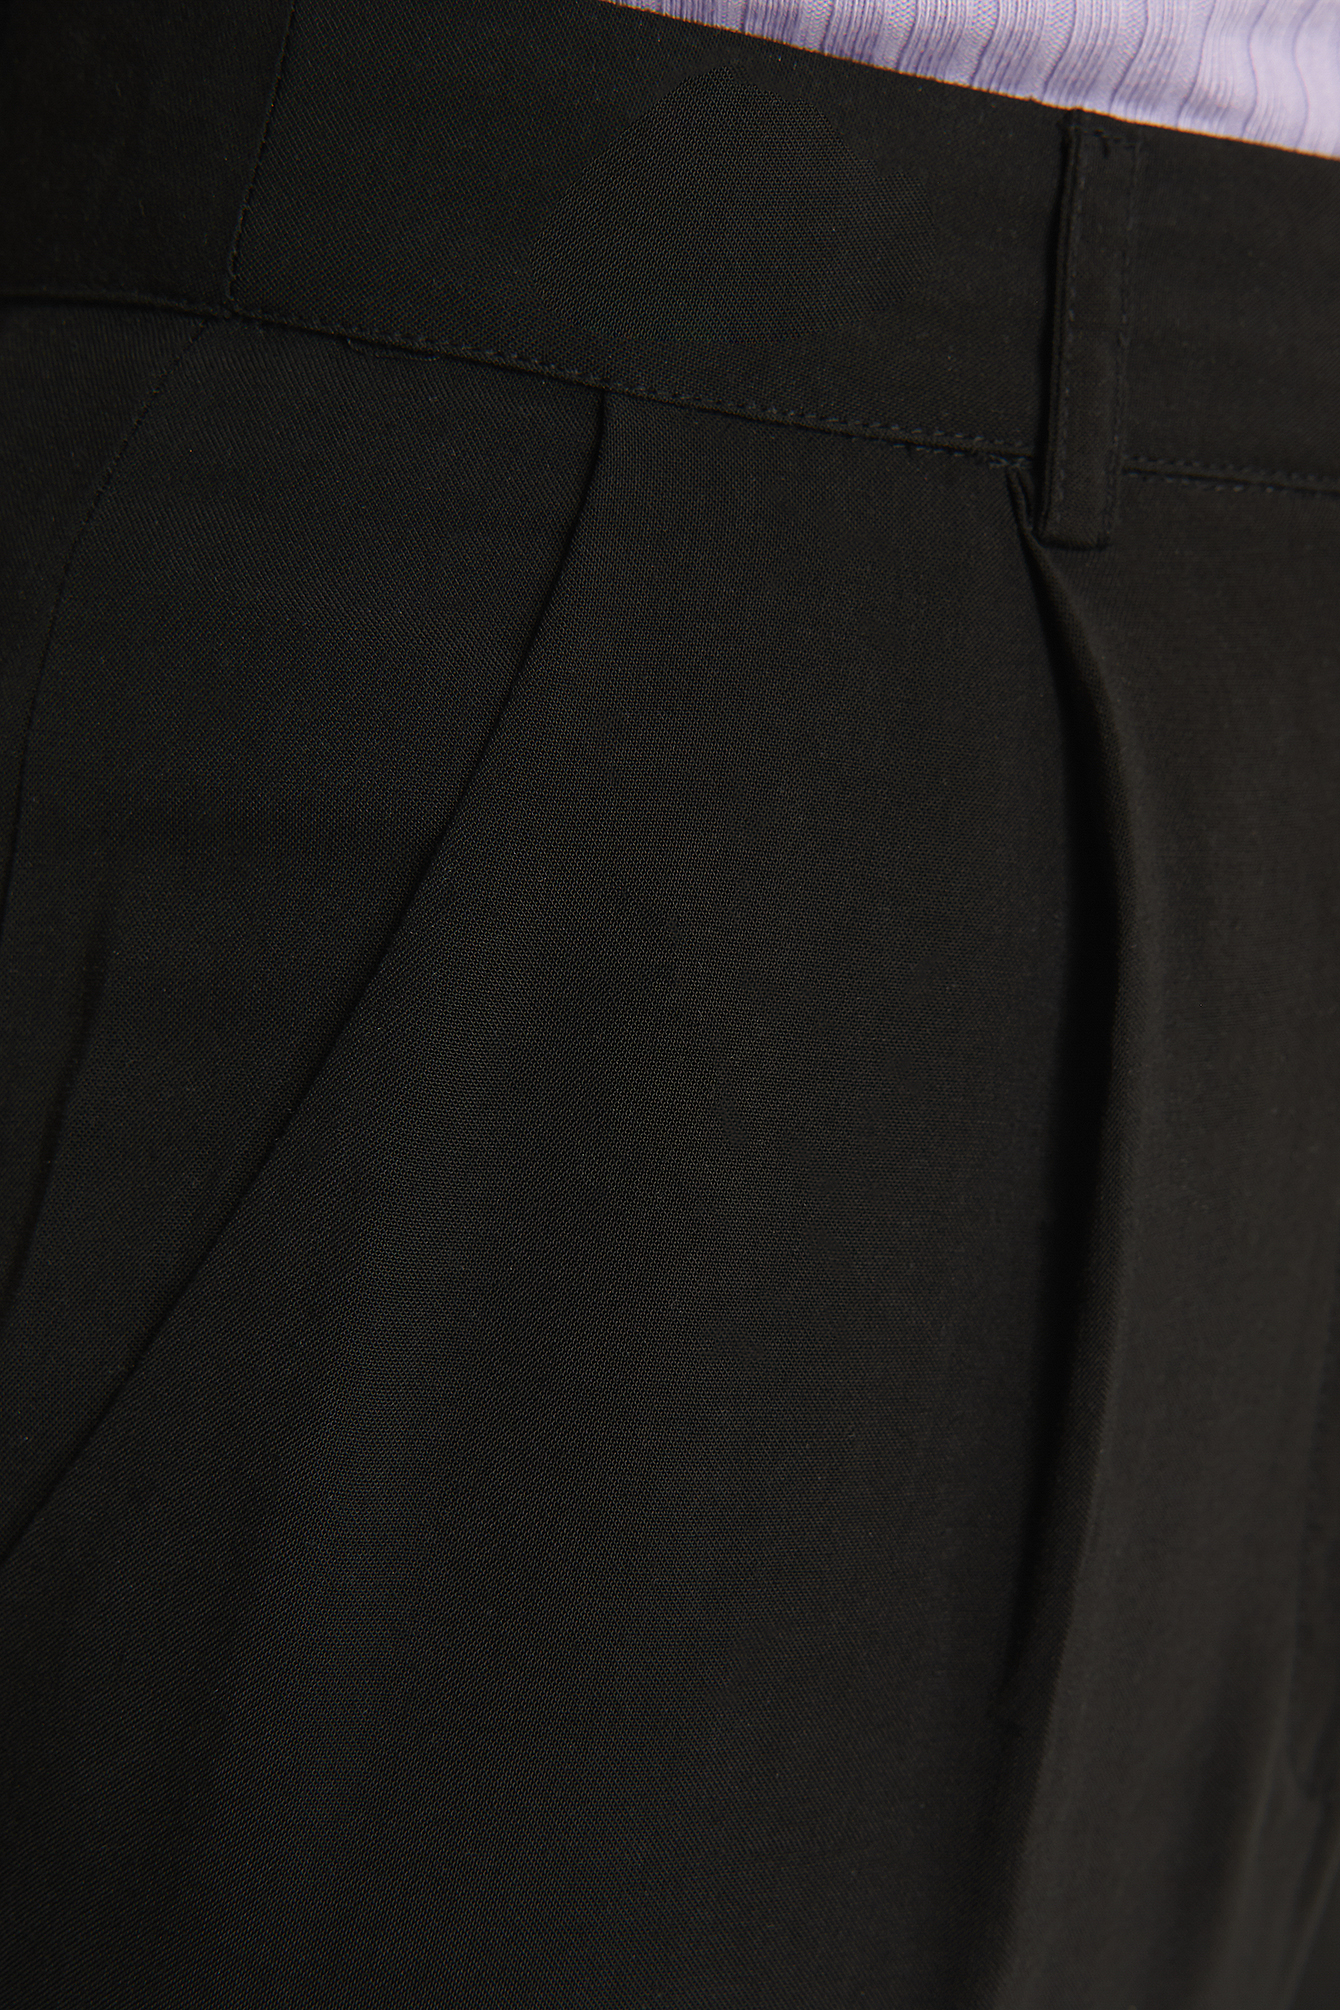 Black Pantalon Fluide Taille Haute